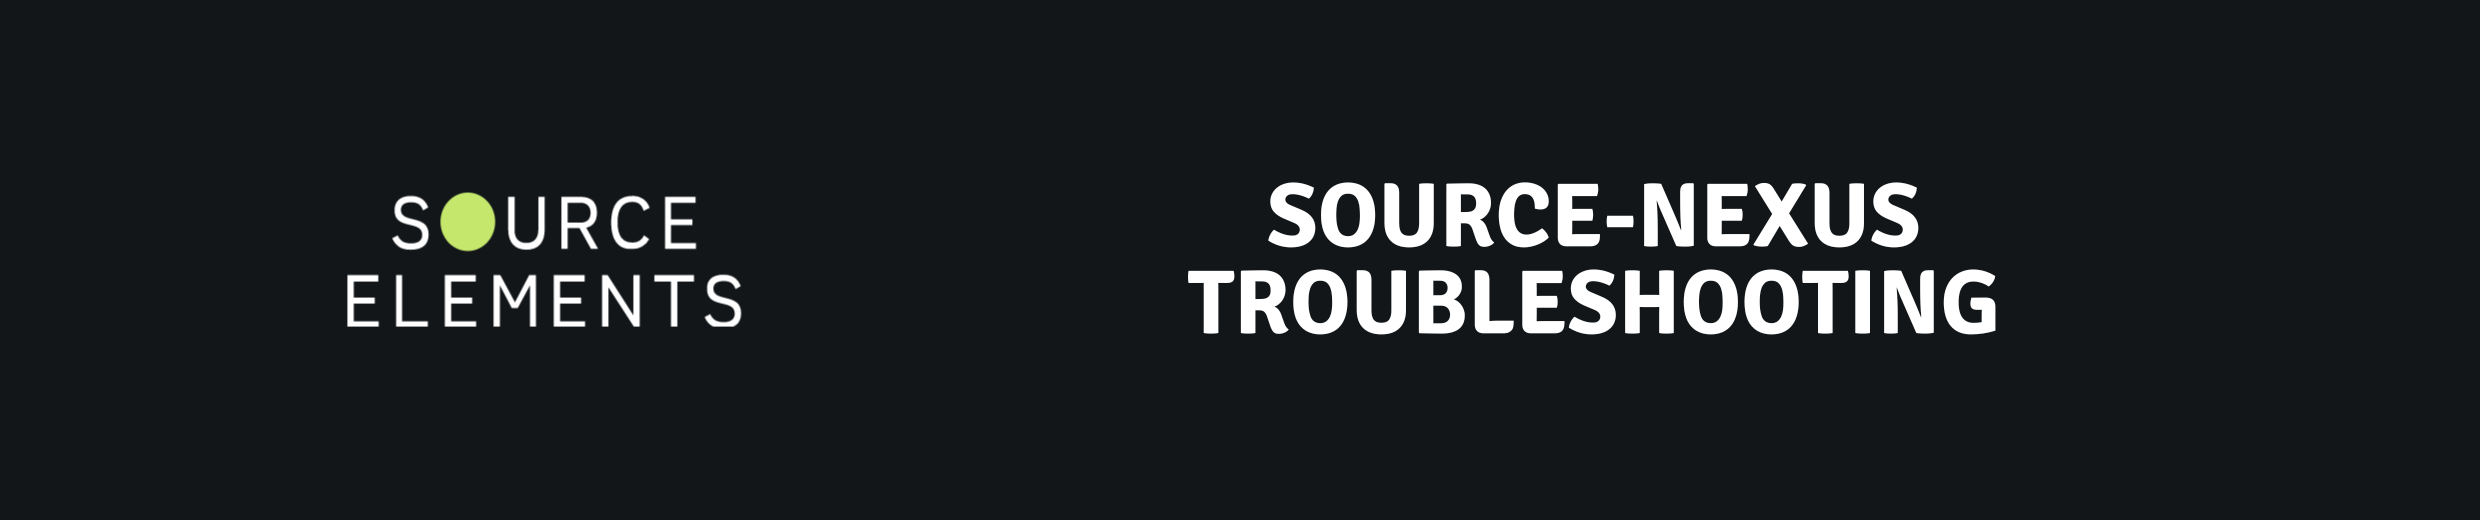 Source-Nexus Troubleshooting